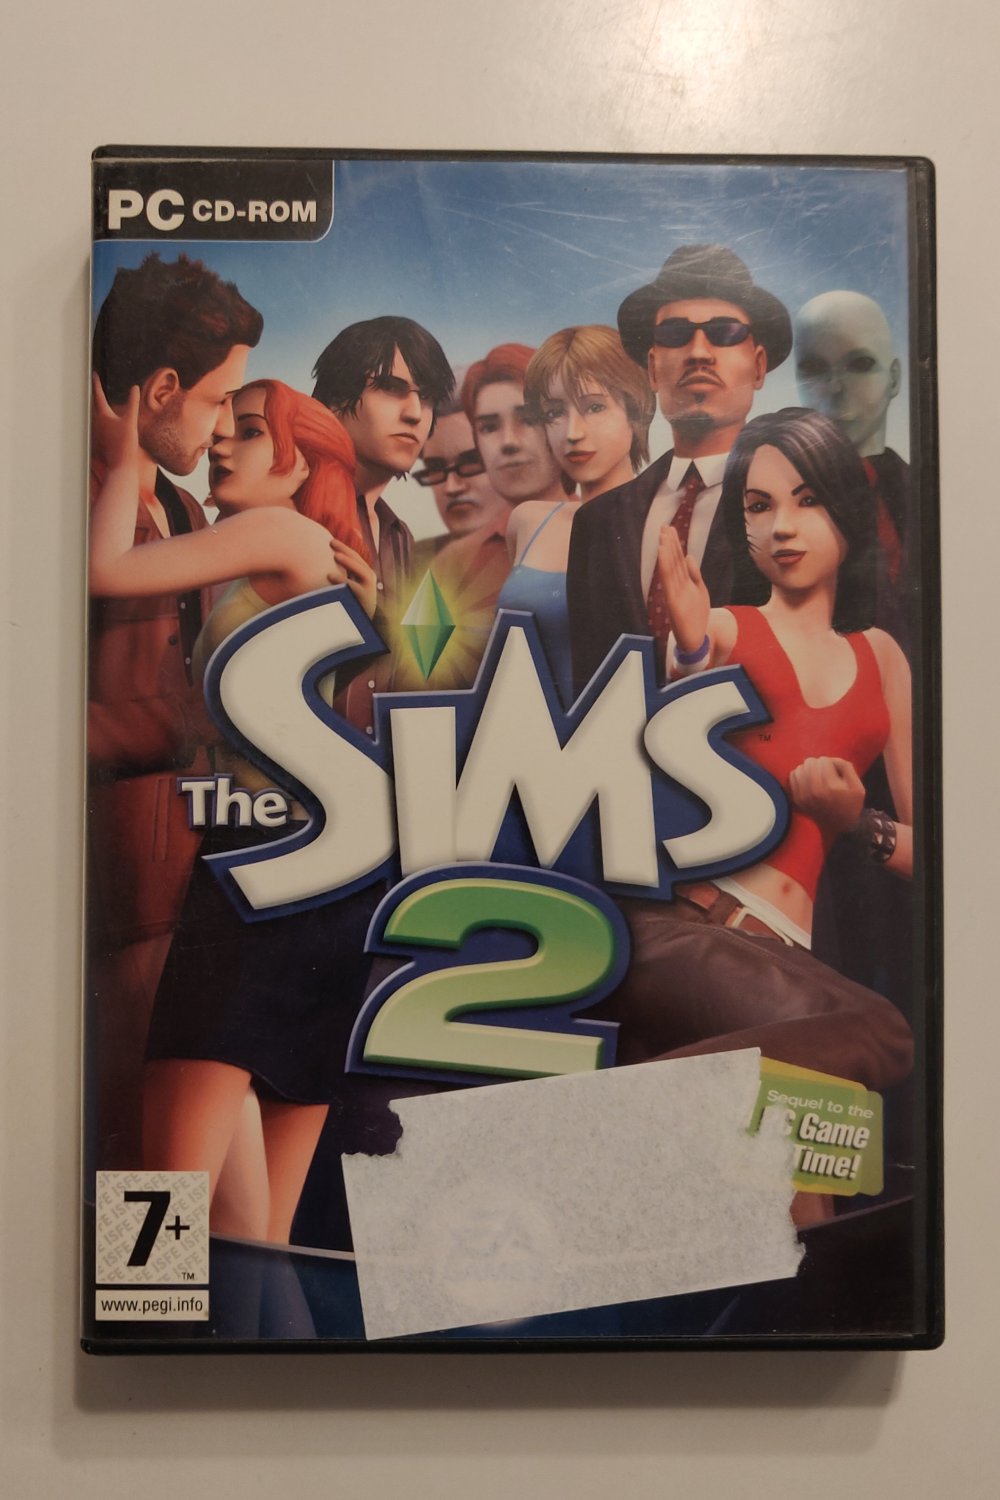 The Sims 2 (PC) (CIB)